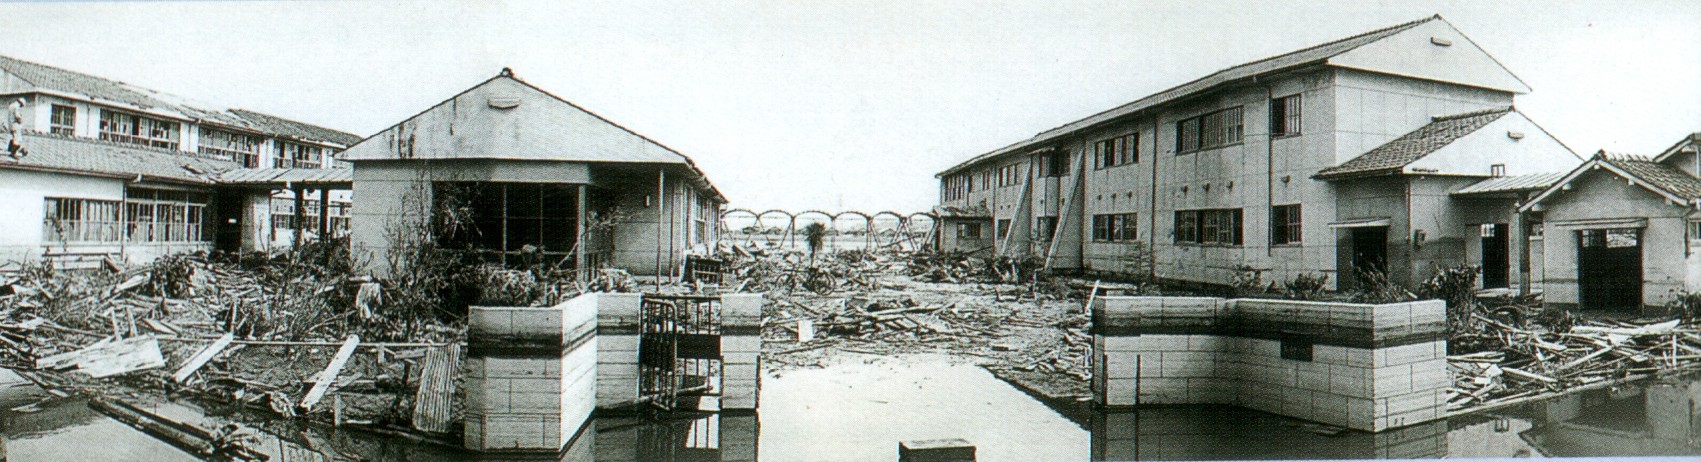 台風の被害を受けた校舎の全景